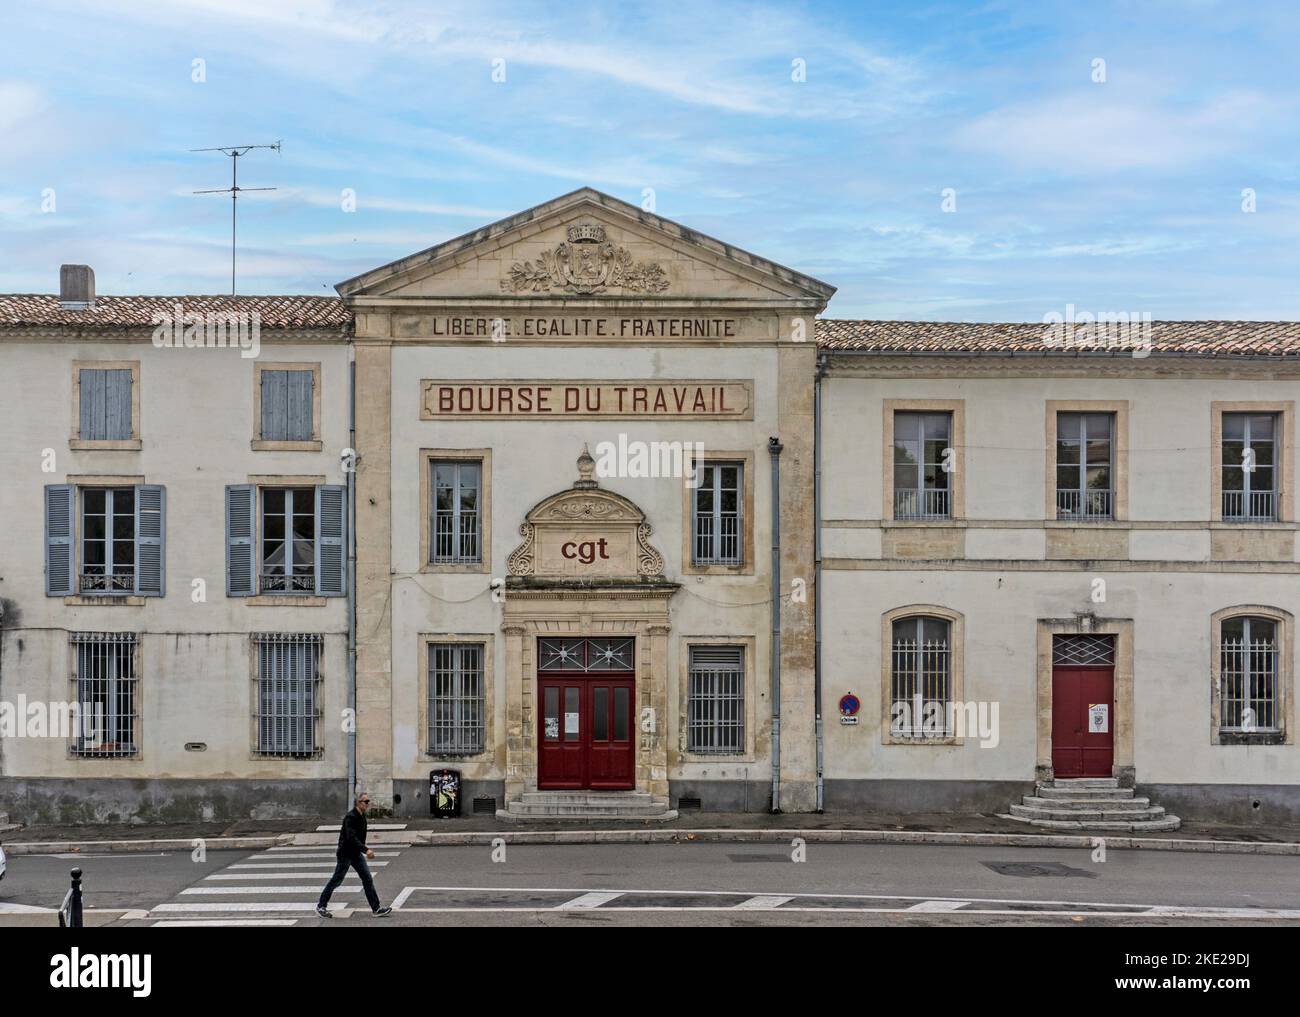 Die Bourse du Travail in Arles, Frankreich. Arbeitsbörse, historisches Gebäude, Arles. Stockfoto